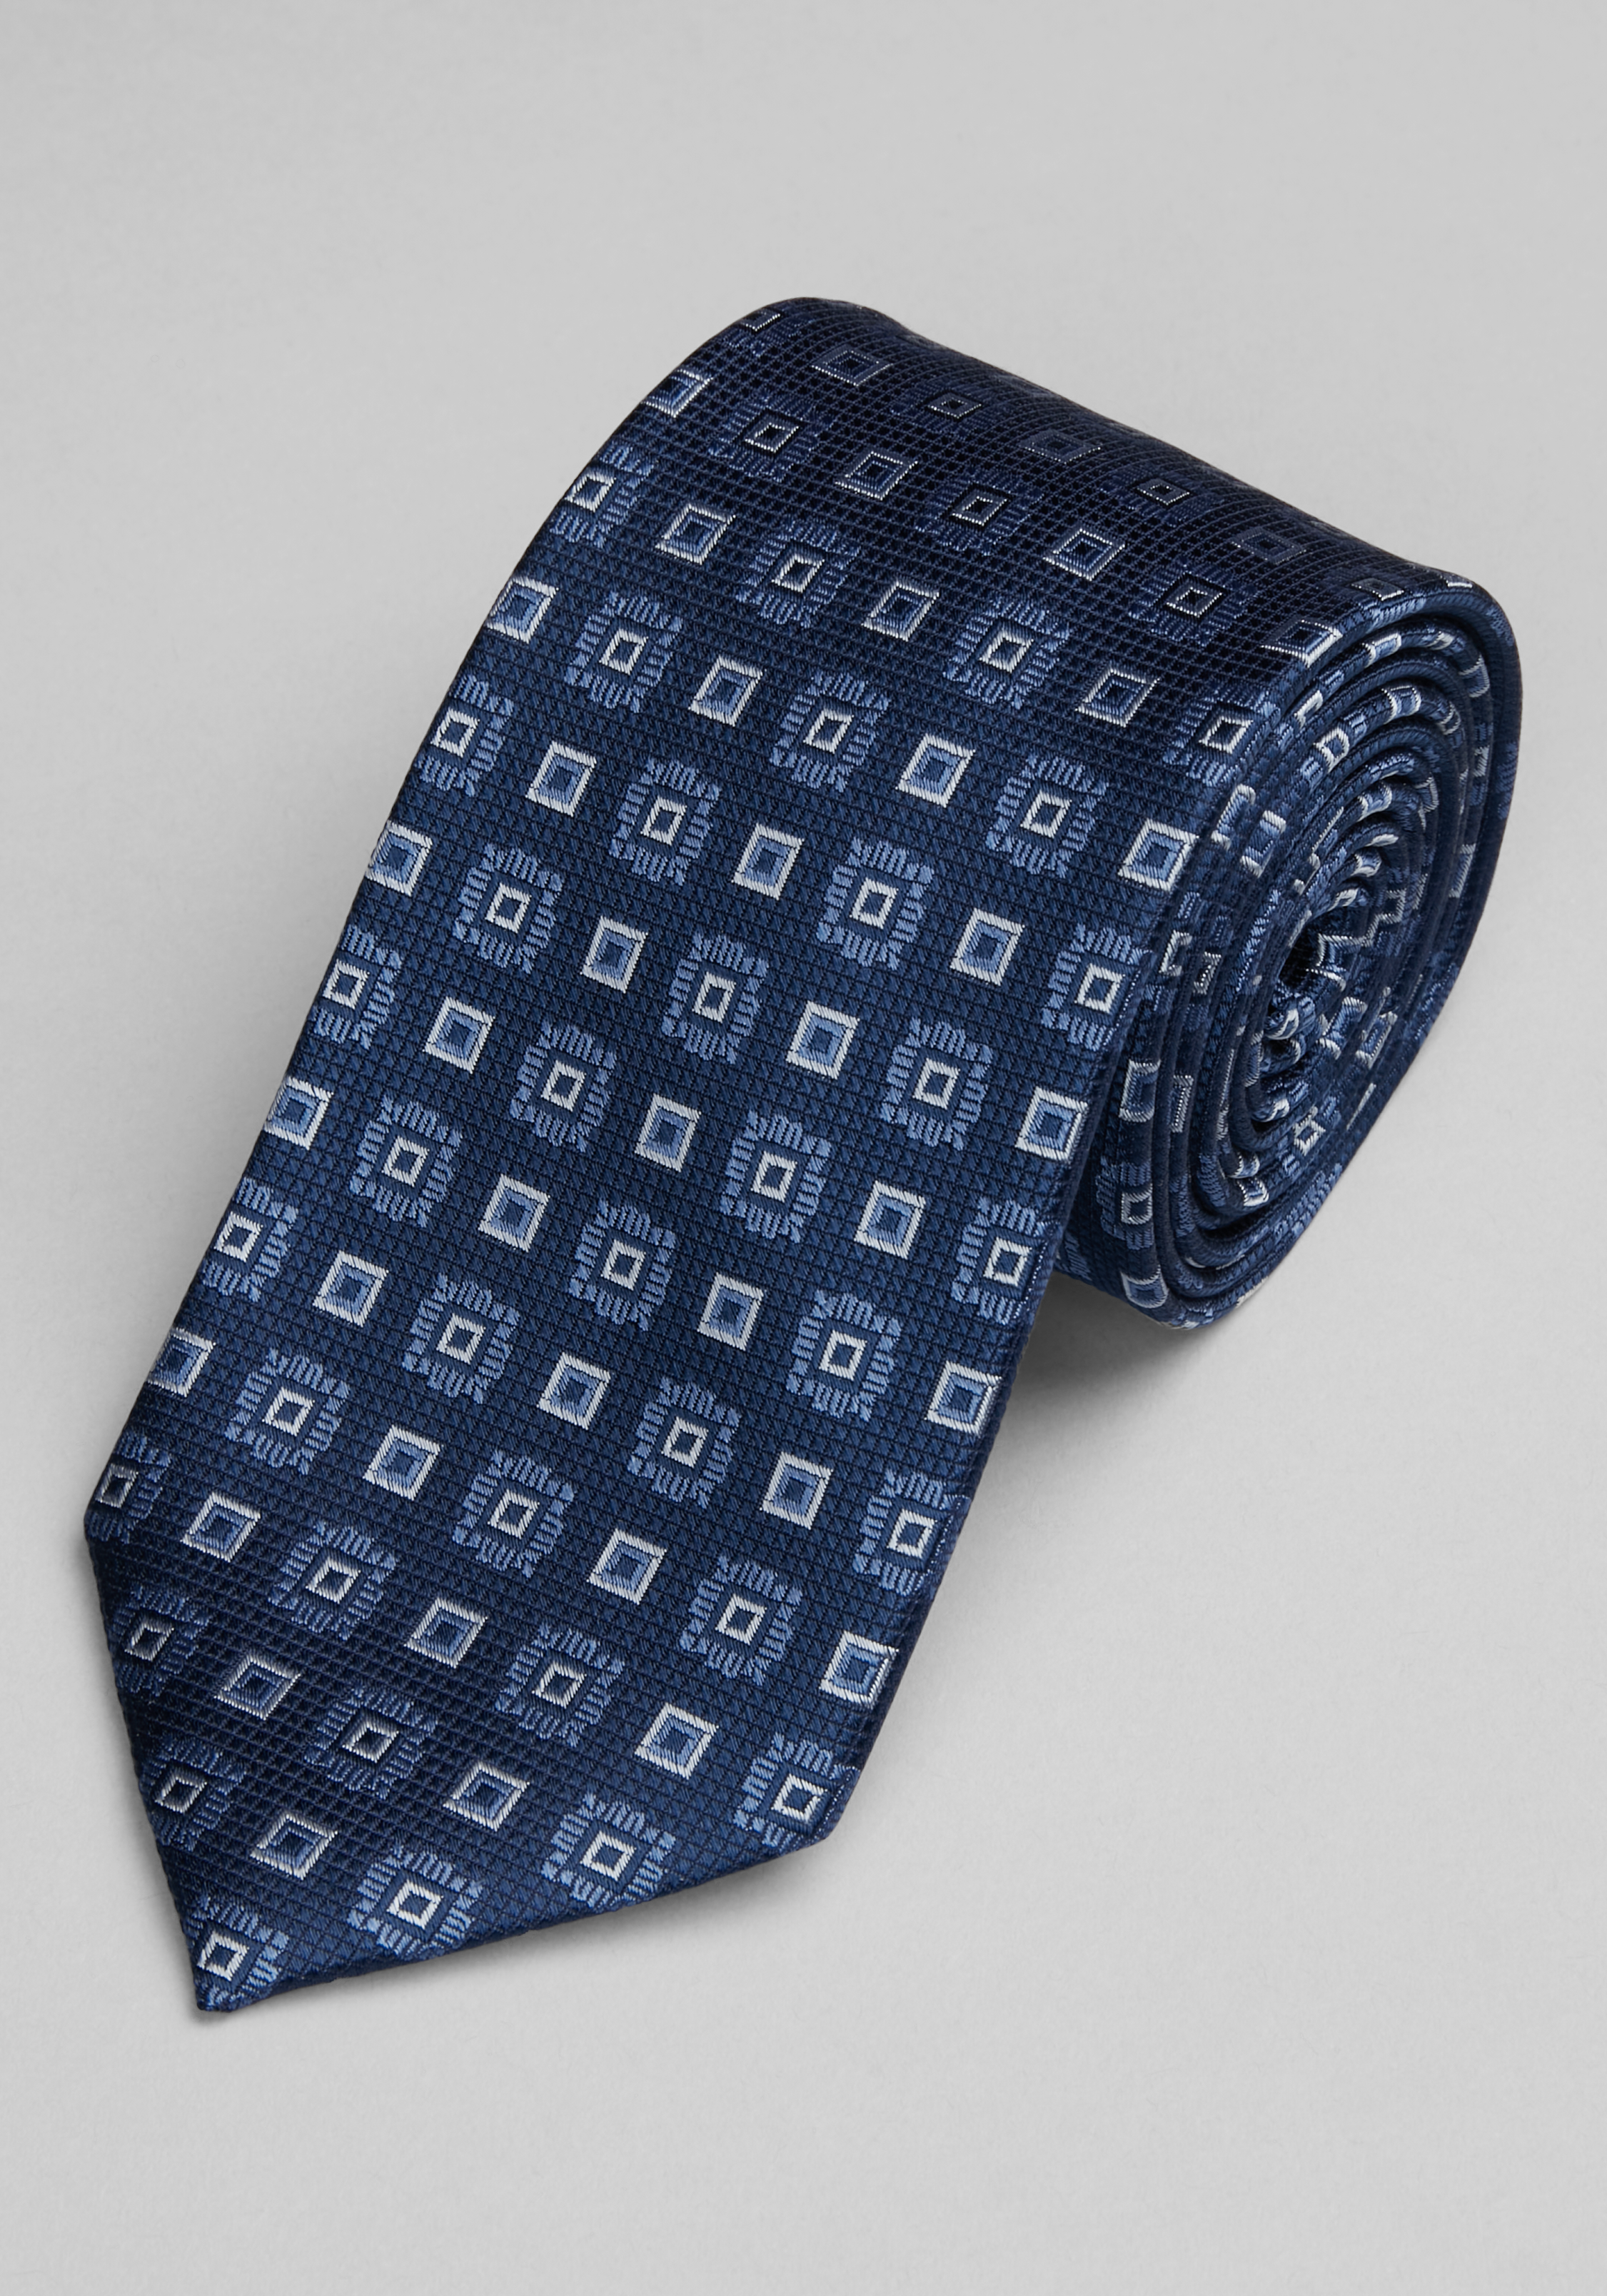 Ties, Neckties & Bow Ties | Men's Neckwear | JoS. A. Bank Clothiers